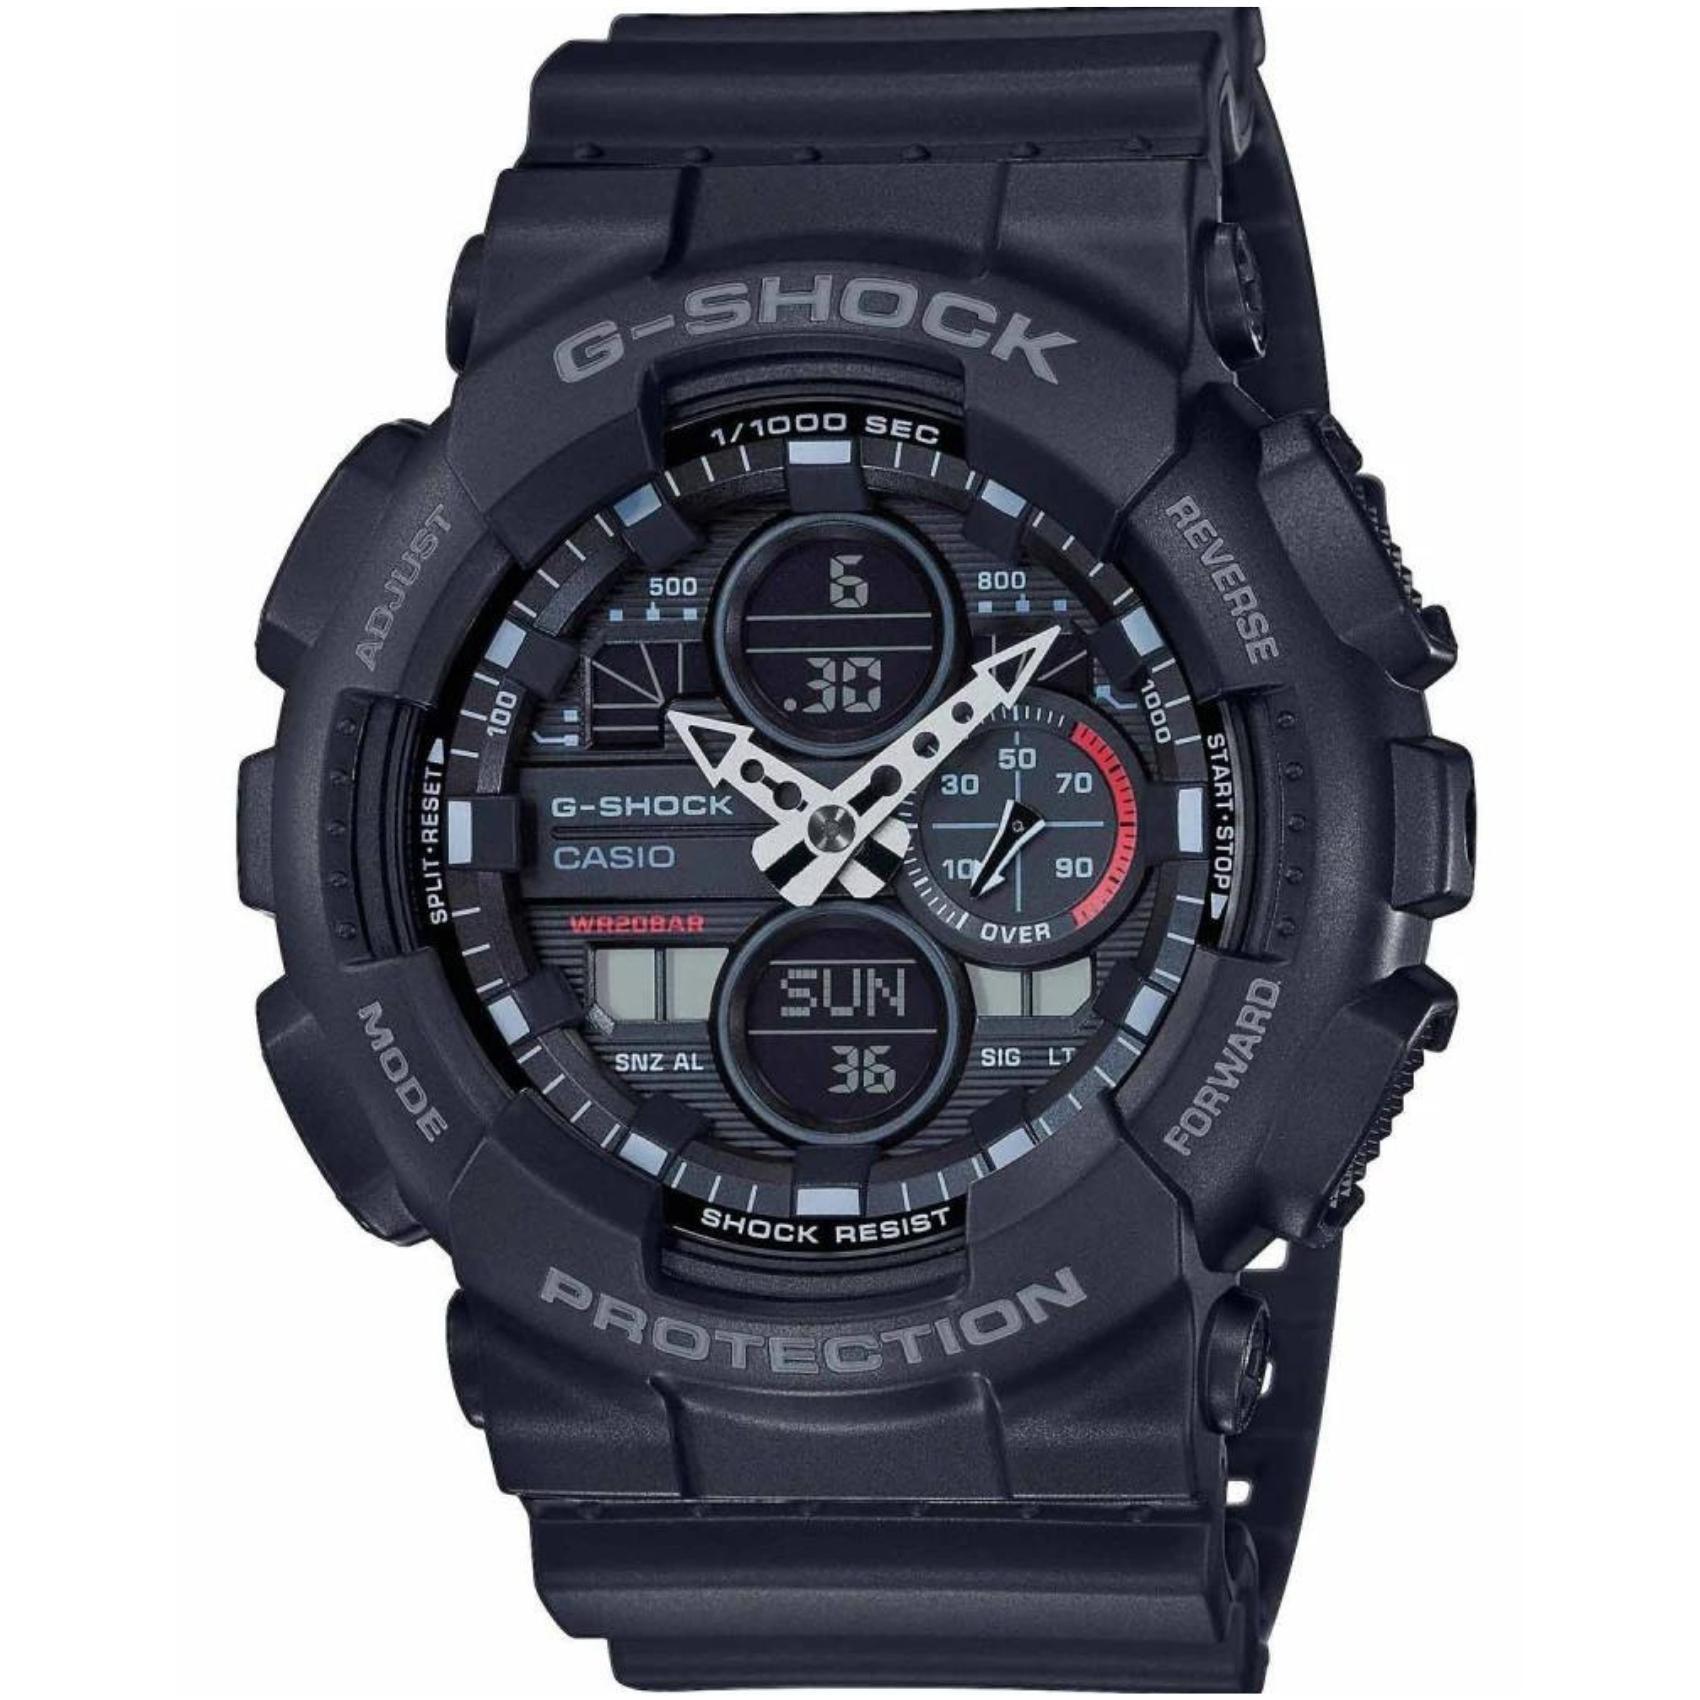 Ρολόι χρονογράφος Casio G-Shock GA-140-1A1ER που συνδυάζει μαύρο καουτσούκ λουράκι και μαύρο καντράν μεγέθους 51mm.